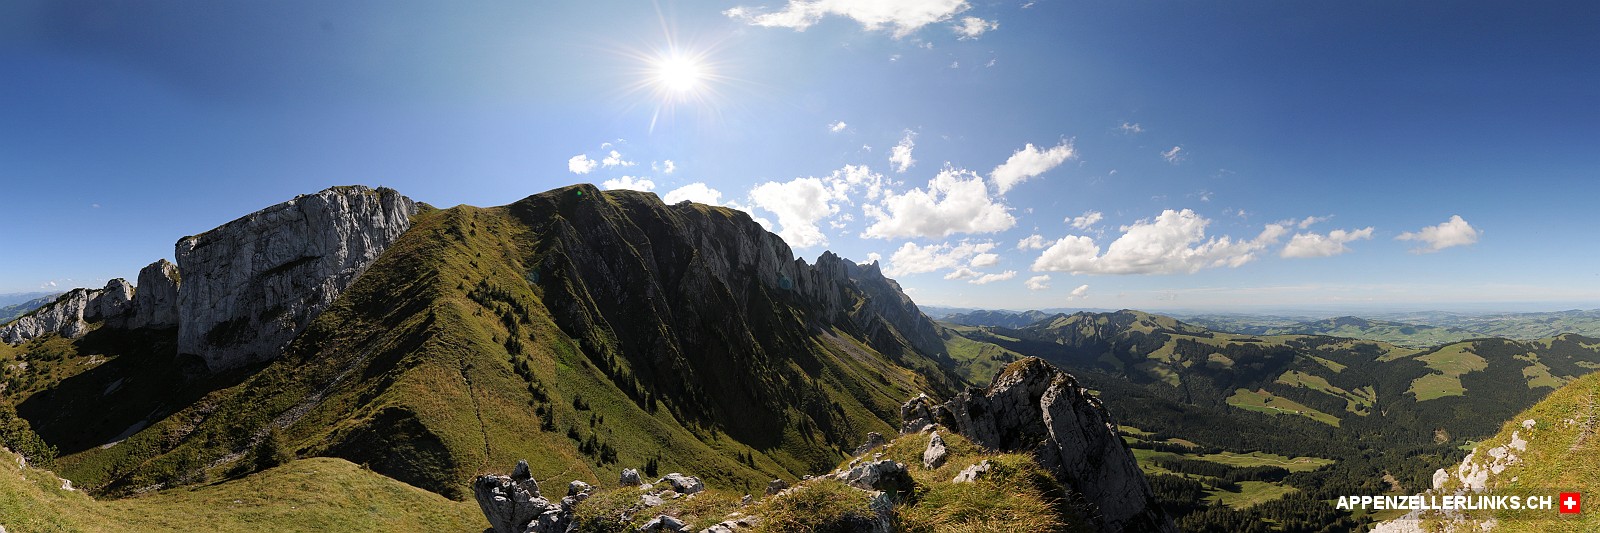 Panorama Filderkopf